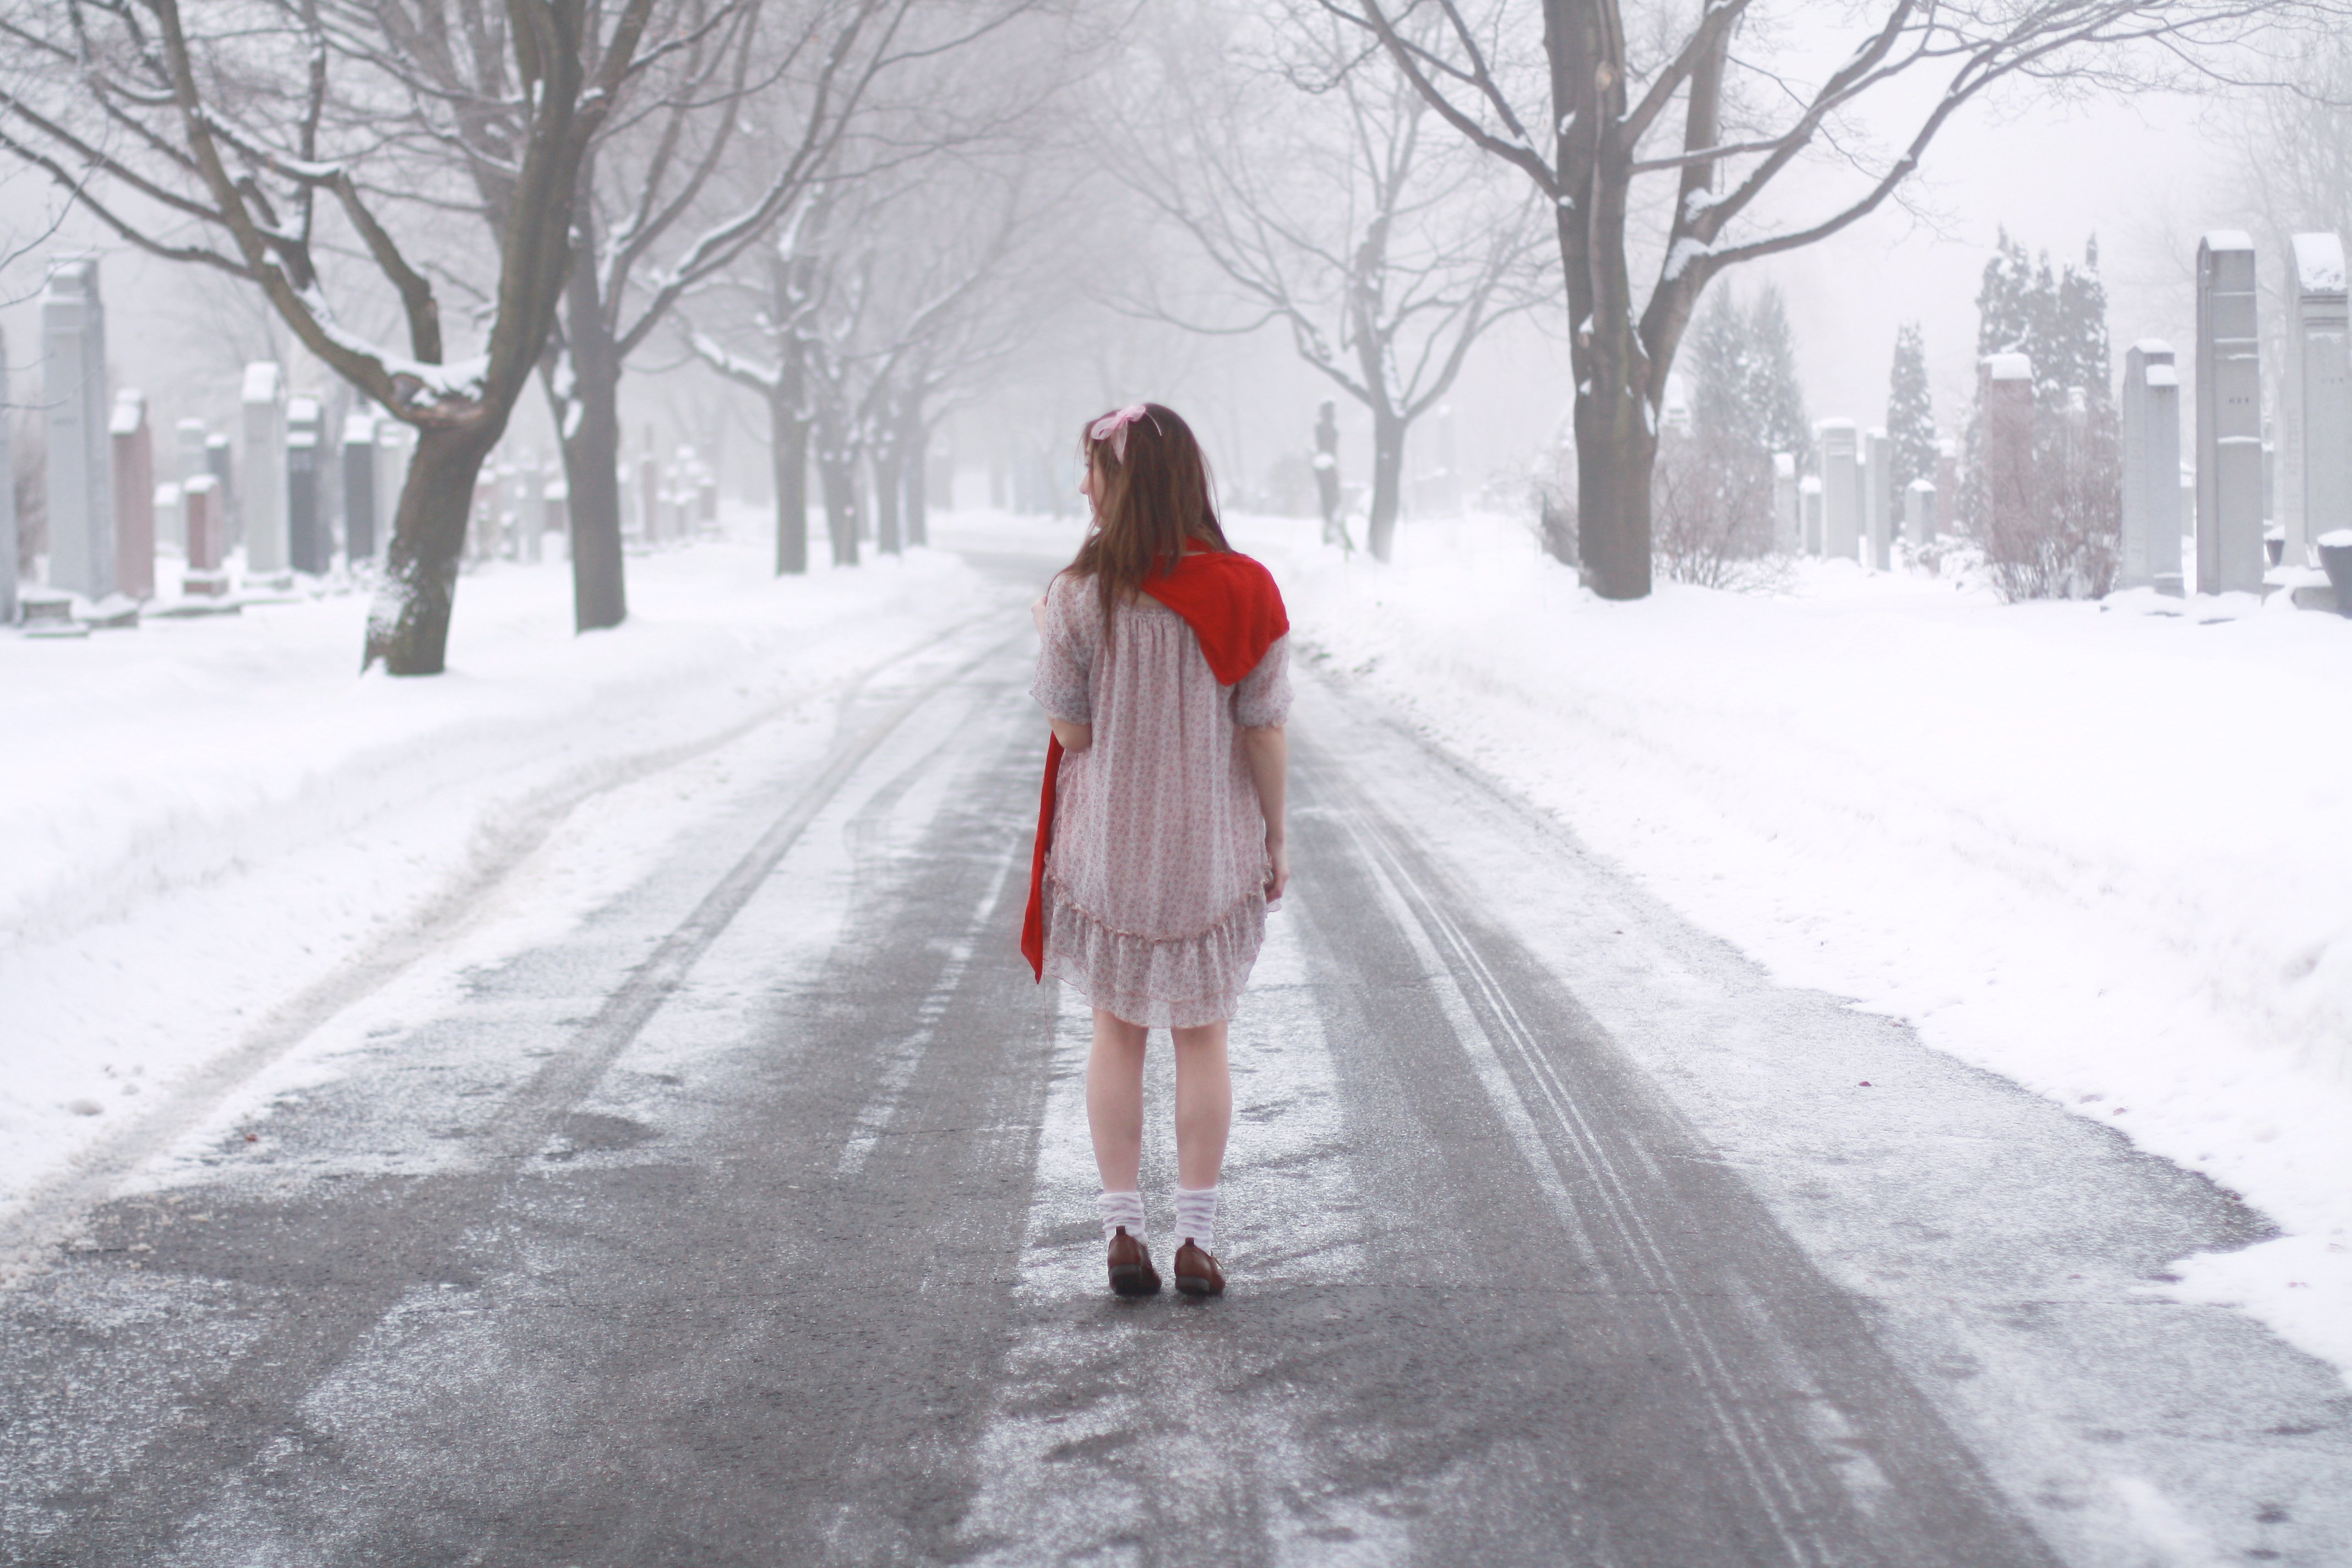 Бредя по улице. Девушка зимой в снегу. Женщины в снегопад на улице. Девушка метель. Девушка идет зима.